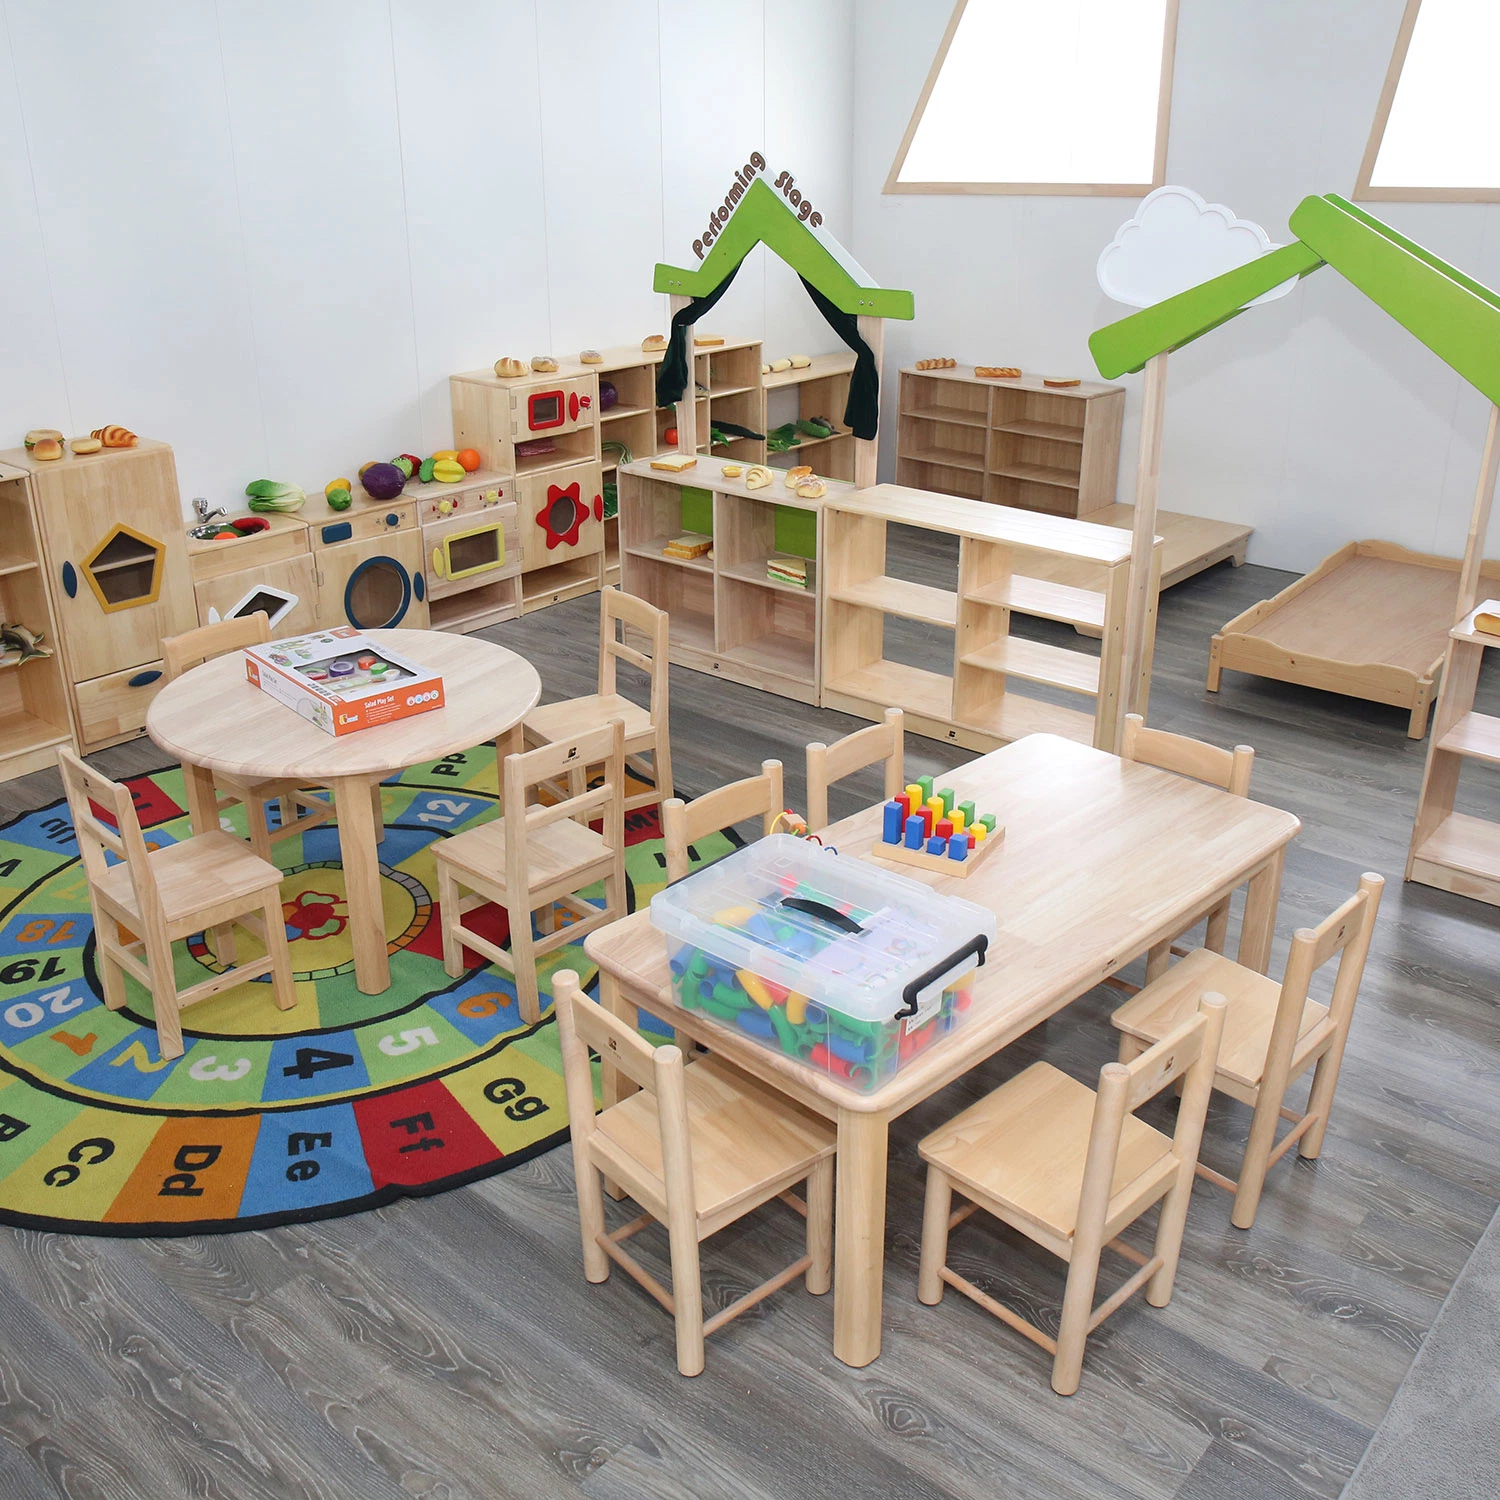 Fábrica de Venda completa China fábrica de Crianças cadeira Infantil Kindergarten, móveis de madeira para bebé, mesas e cadeiras pré-escolares, mobiliário escolar para alunos